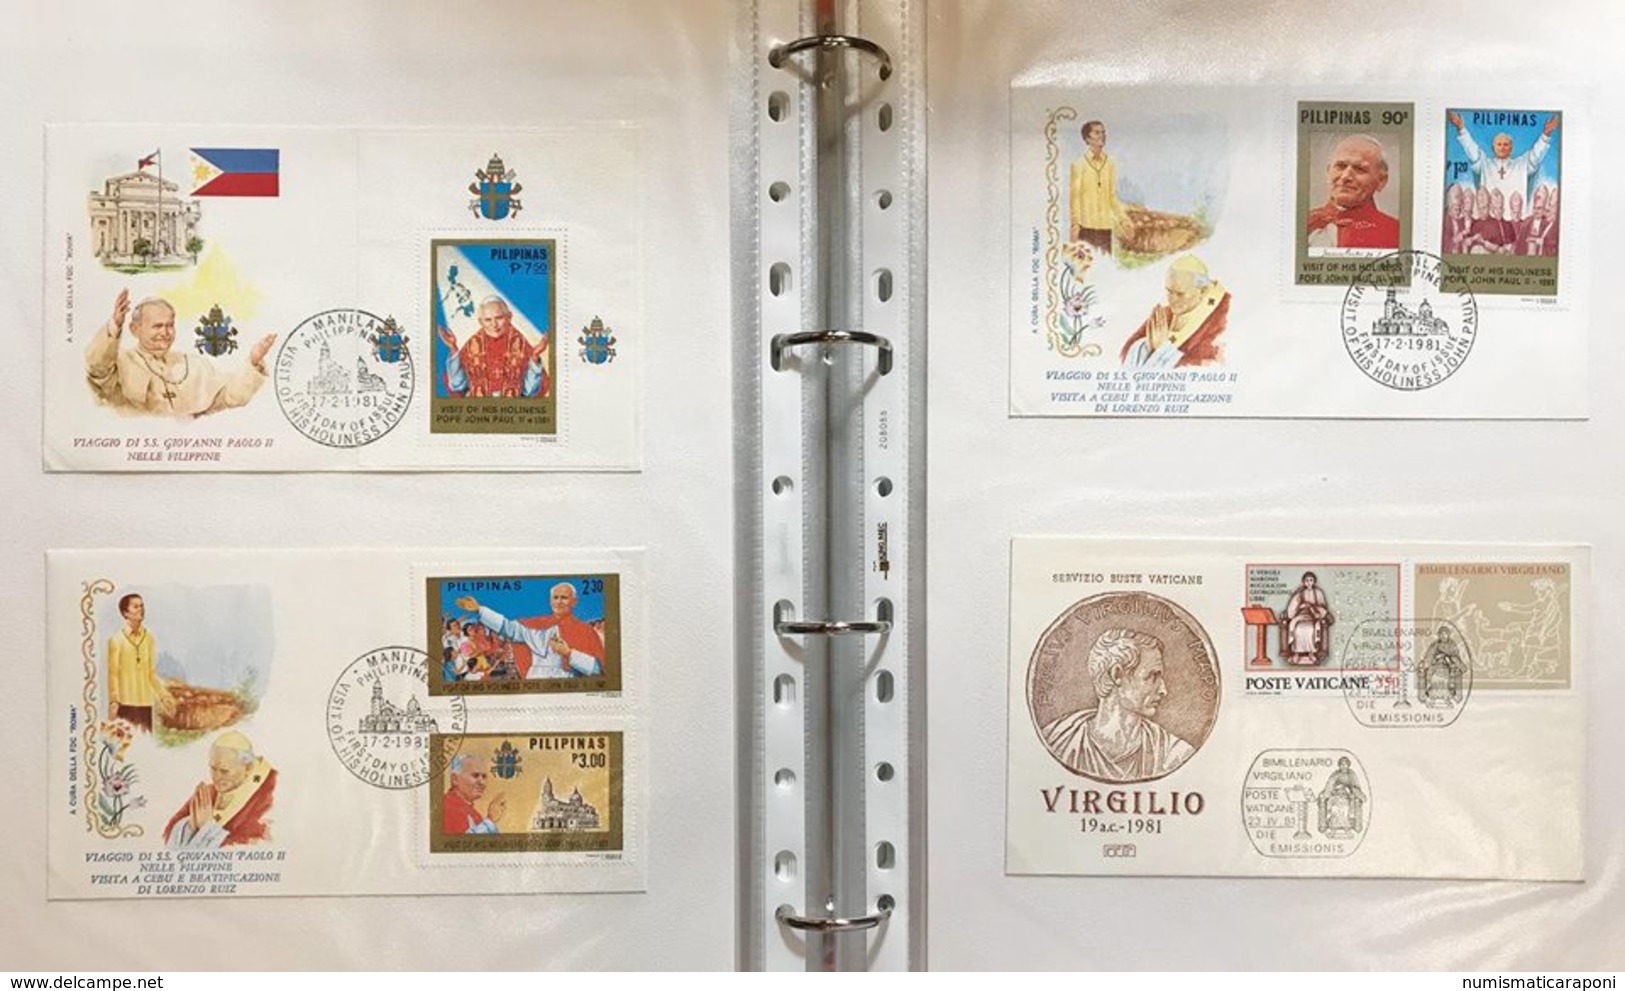 vaticano 1966-1986 raccolta di annate in busta primo giorno con posta aerea foglietti e congiunte